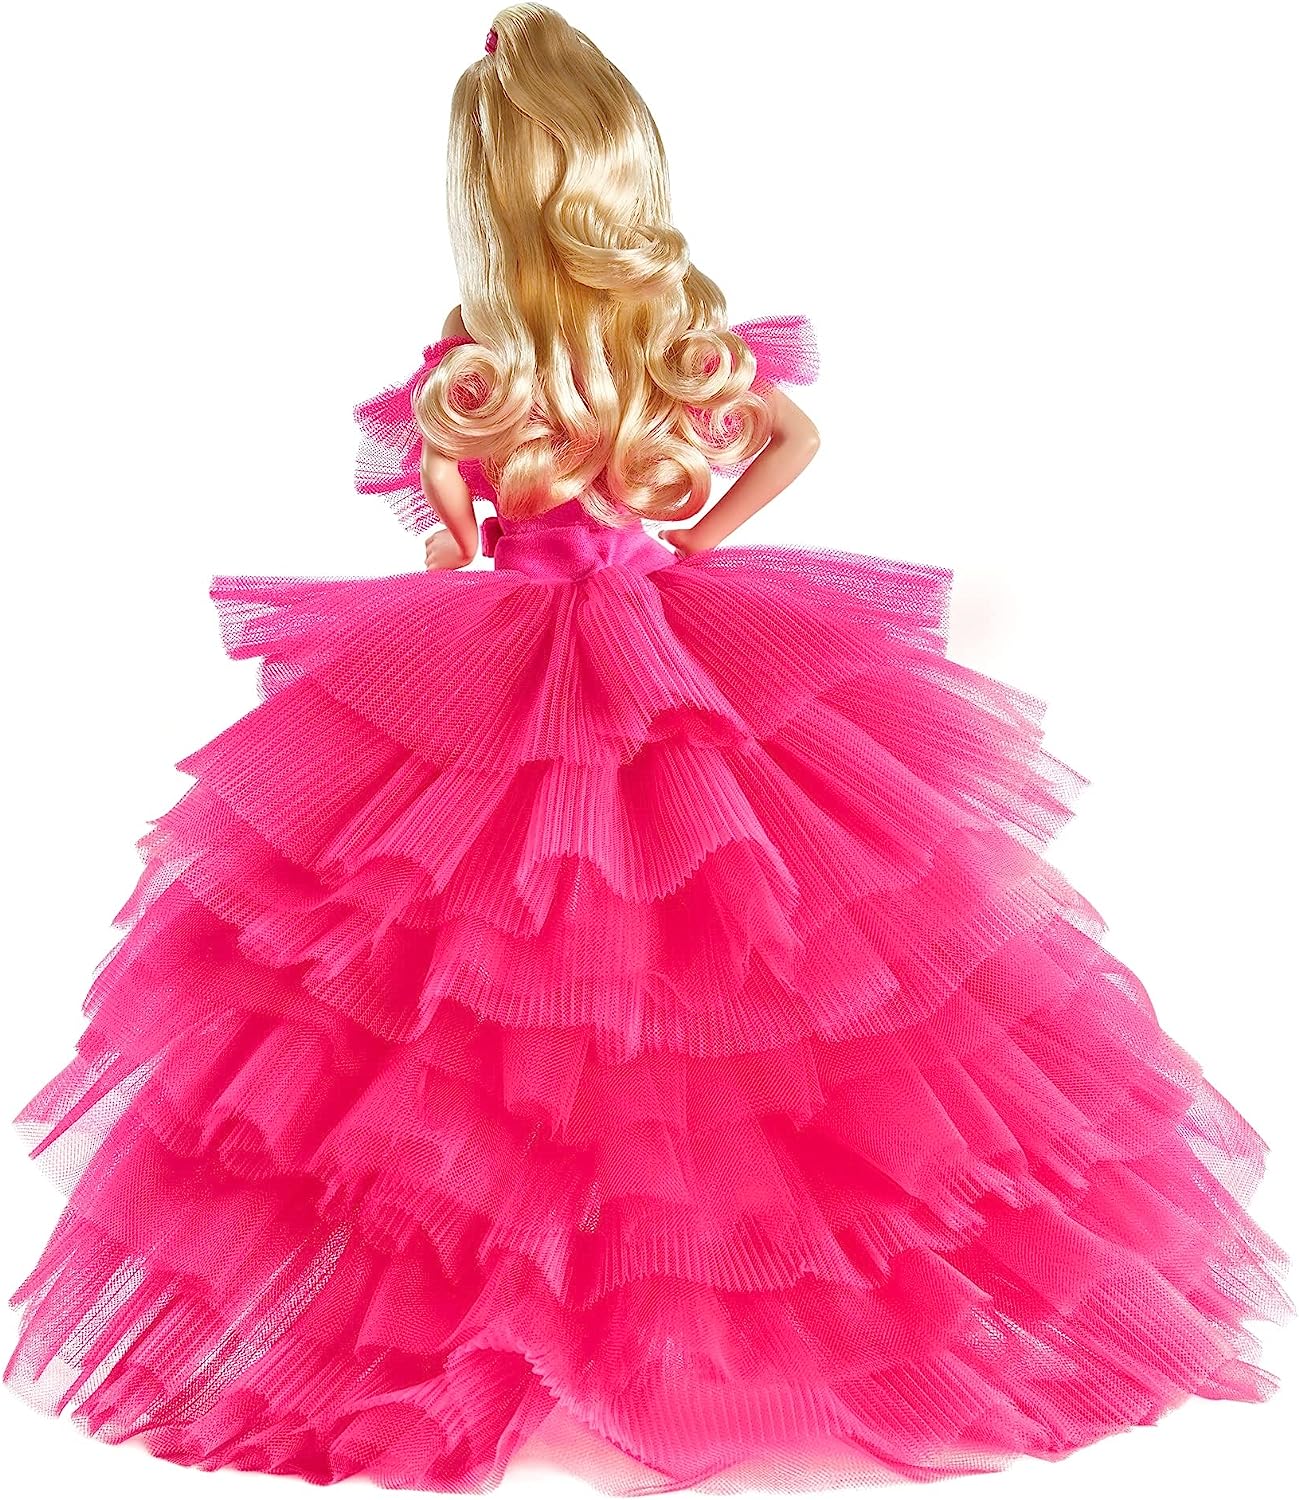 【送料無料】バービー Barbie ピンクコレクションドール ピンクプレミア ゴールドラベル GTJ76 シルクストーン コレクター プレゼント |  angelica